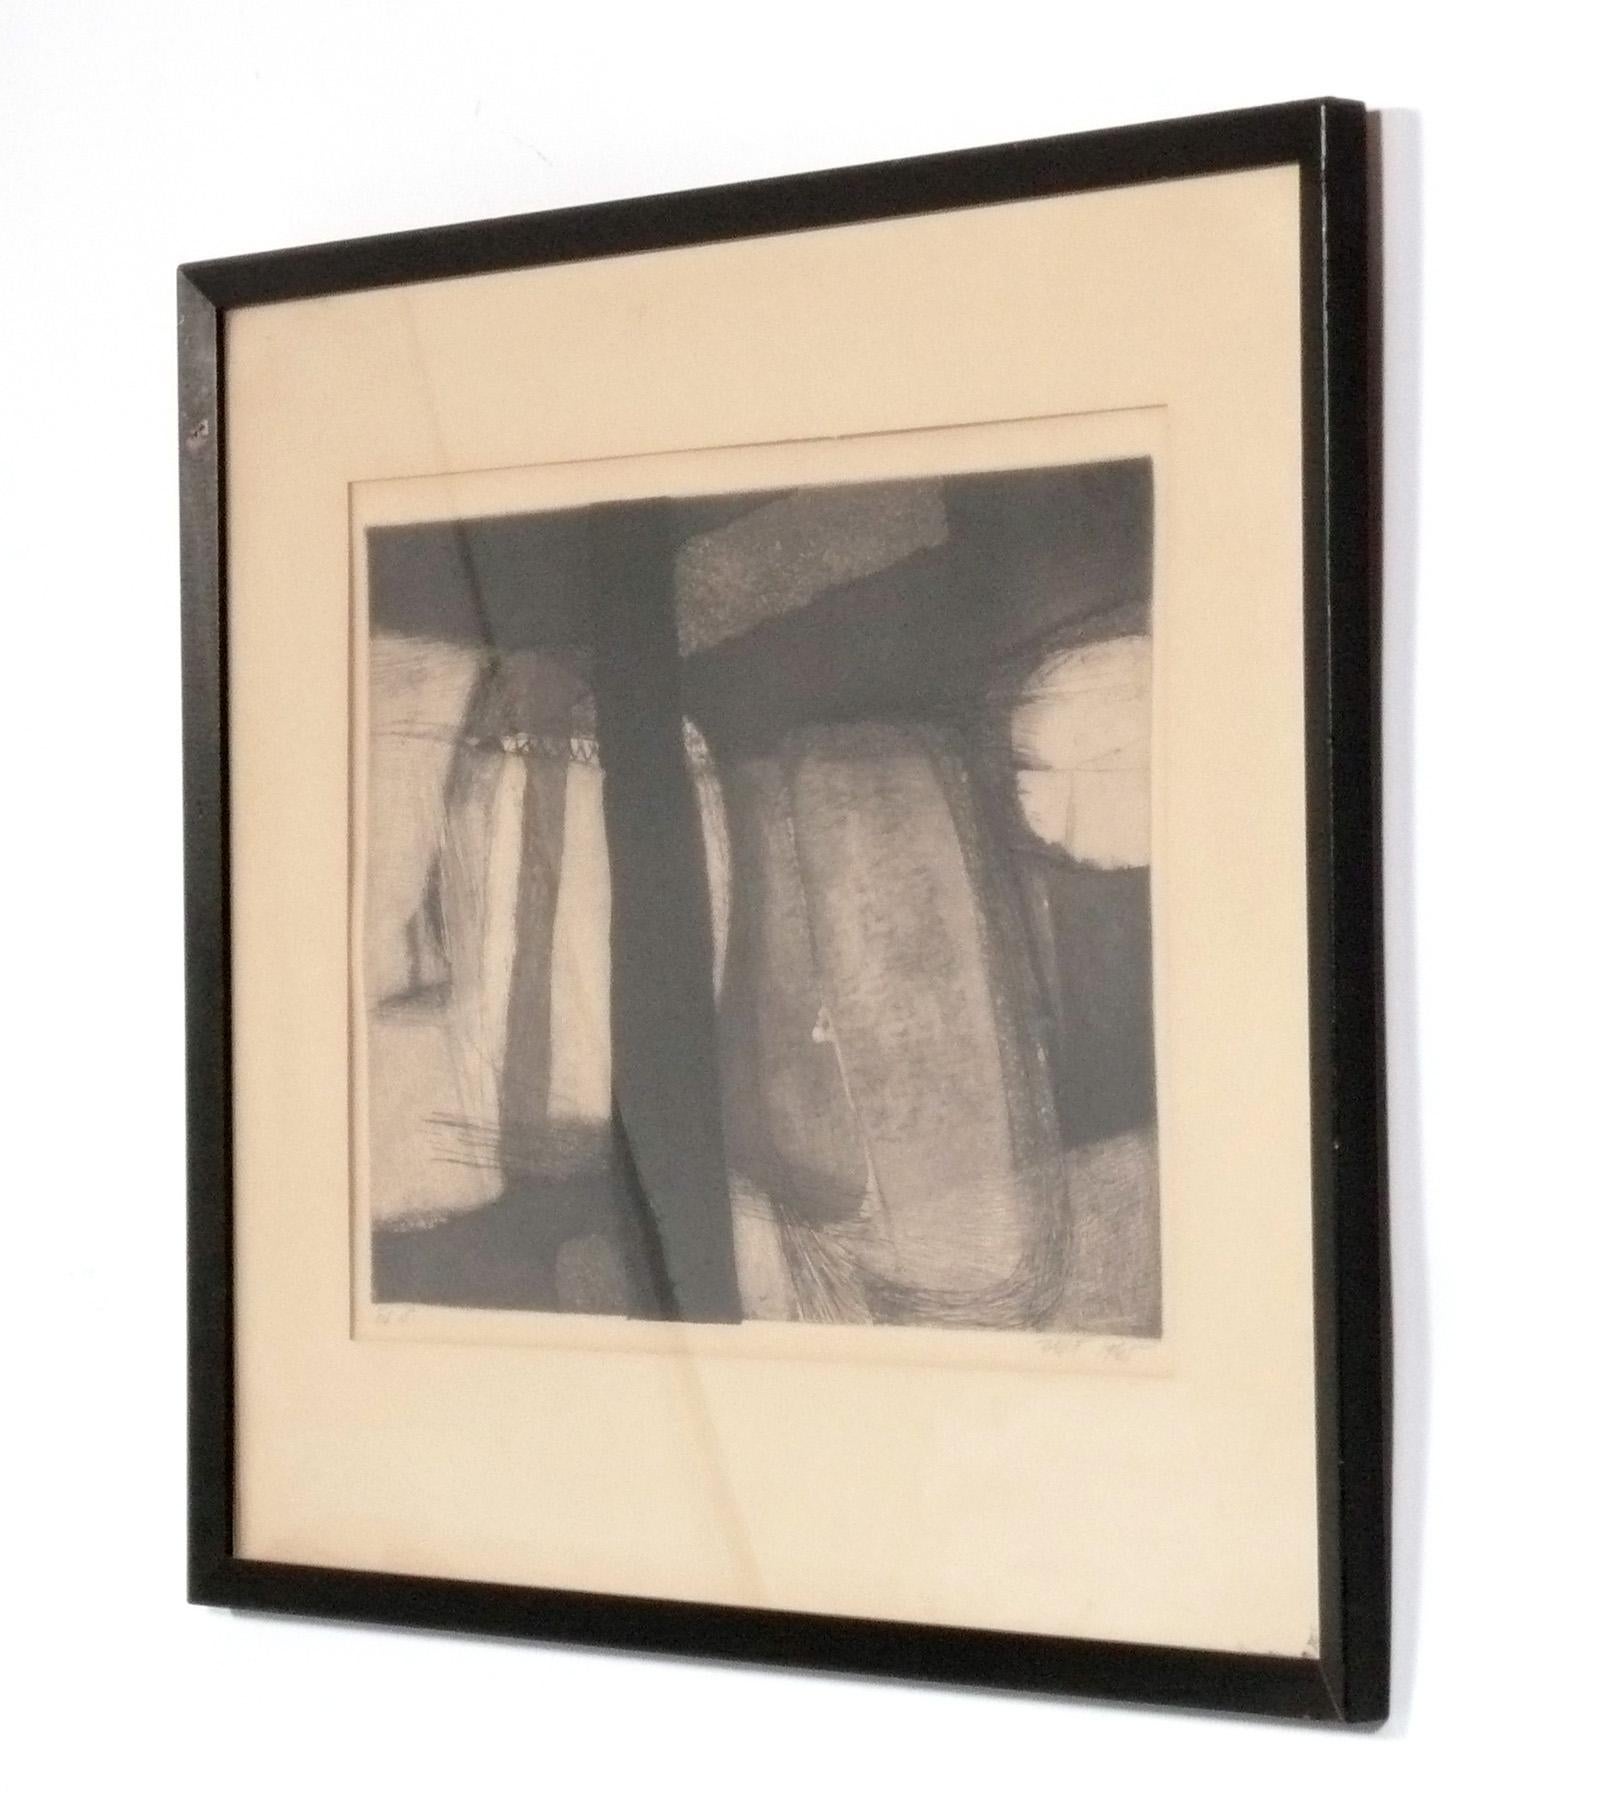 Abstrakte expressionistische Lithografie von Martha Zelt, Amerikanerin, ca. 1950er Jahre. Eine herausragende schwarz-weiße abstrakte expressionistische Lithographie der bekannten Künstlerin Martha Zelt. Ihre Arbeiten werden in mehreren großen Museen